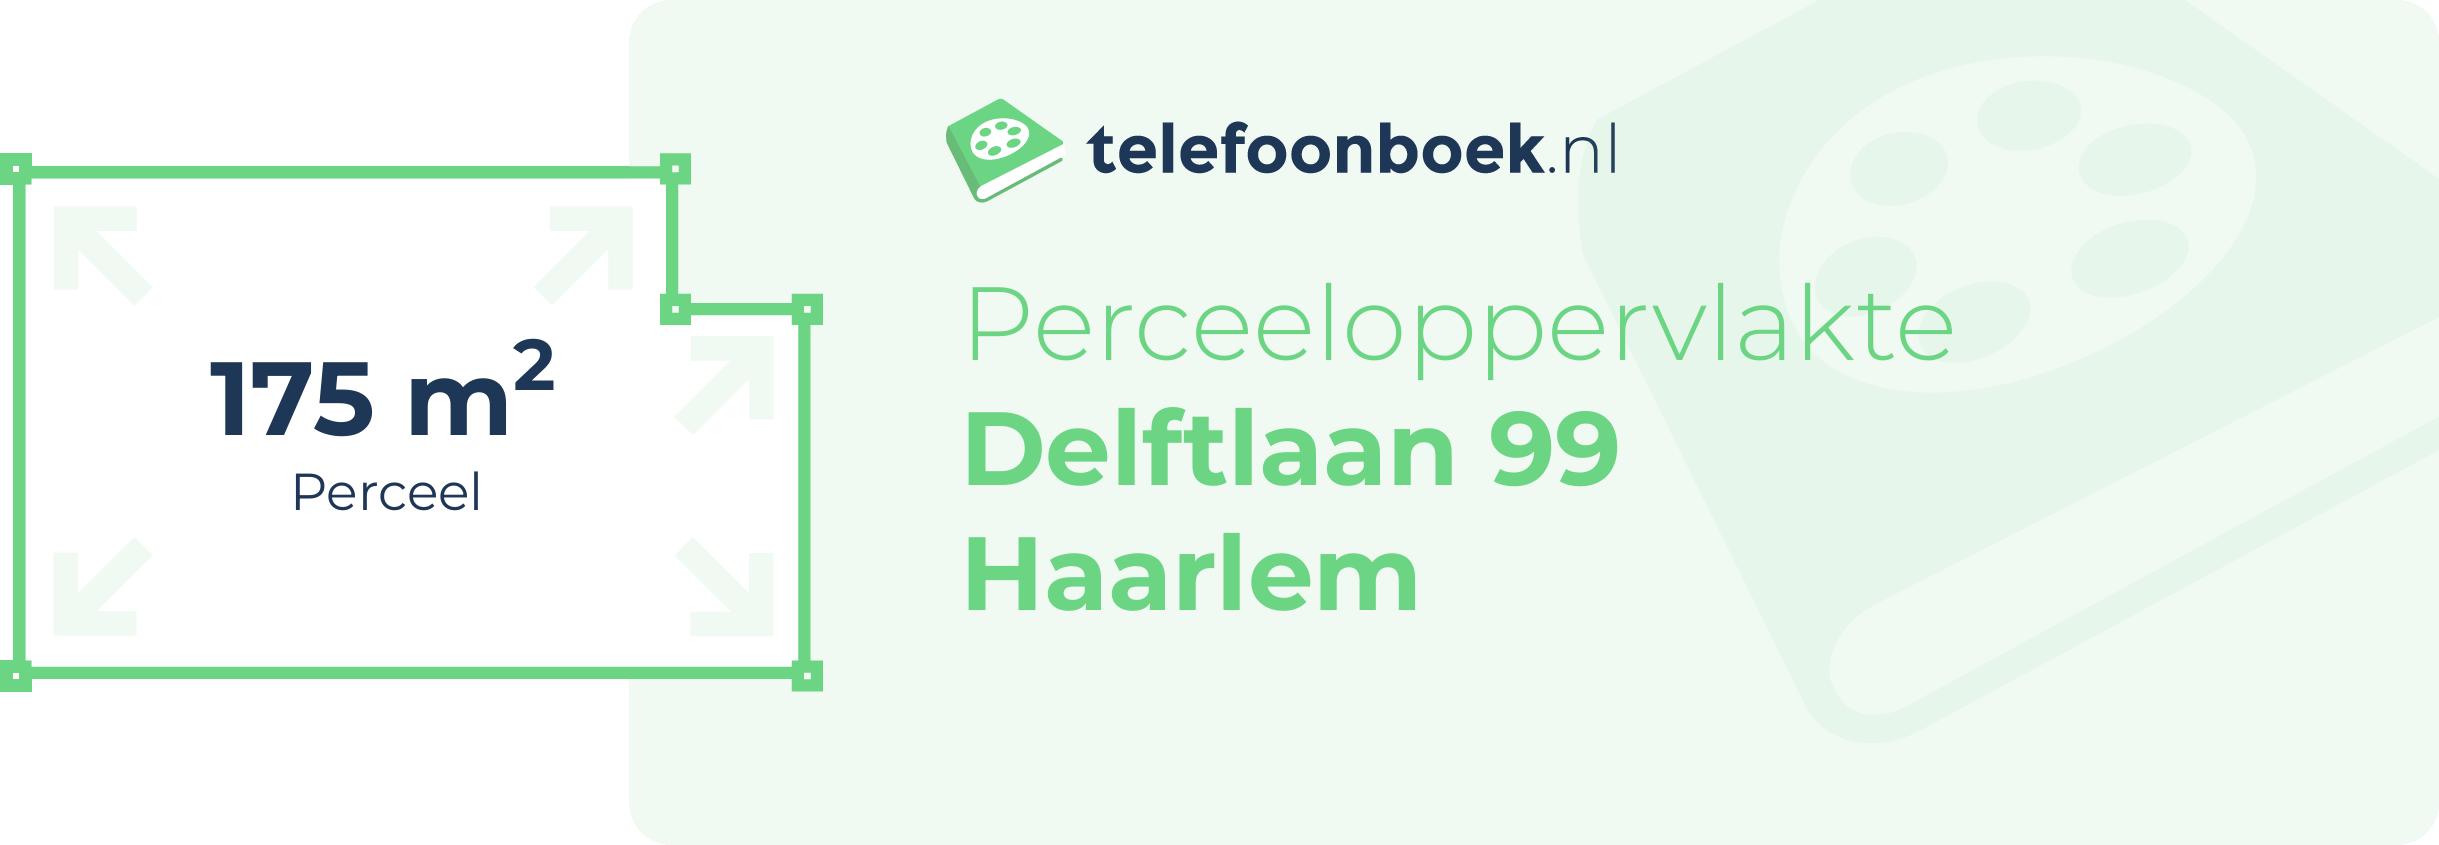 Perceeloppervlakte Delftlaan 99 Haarlem